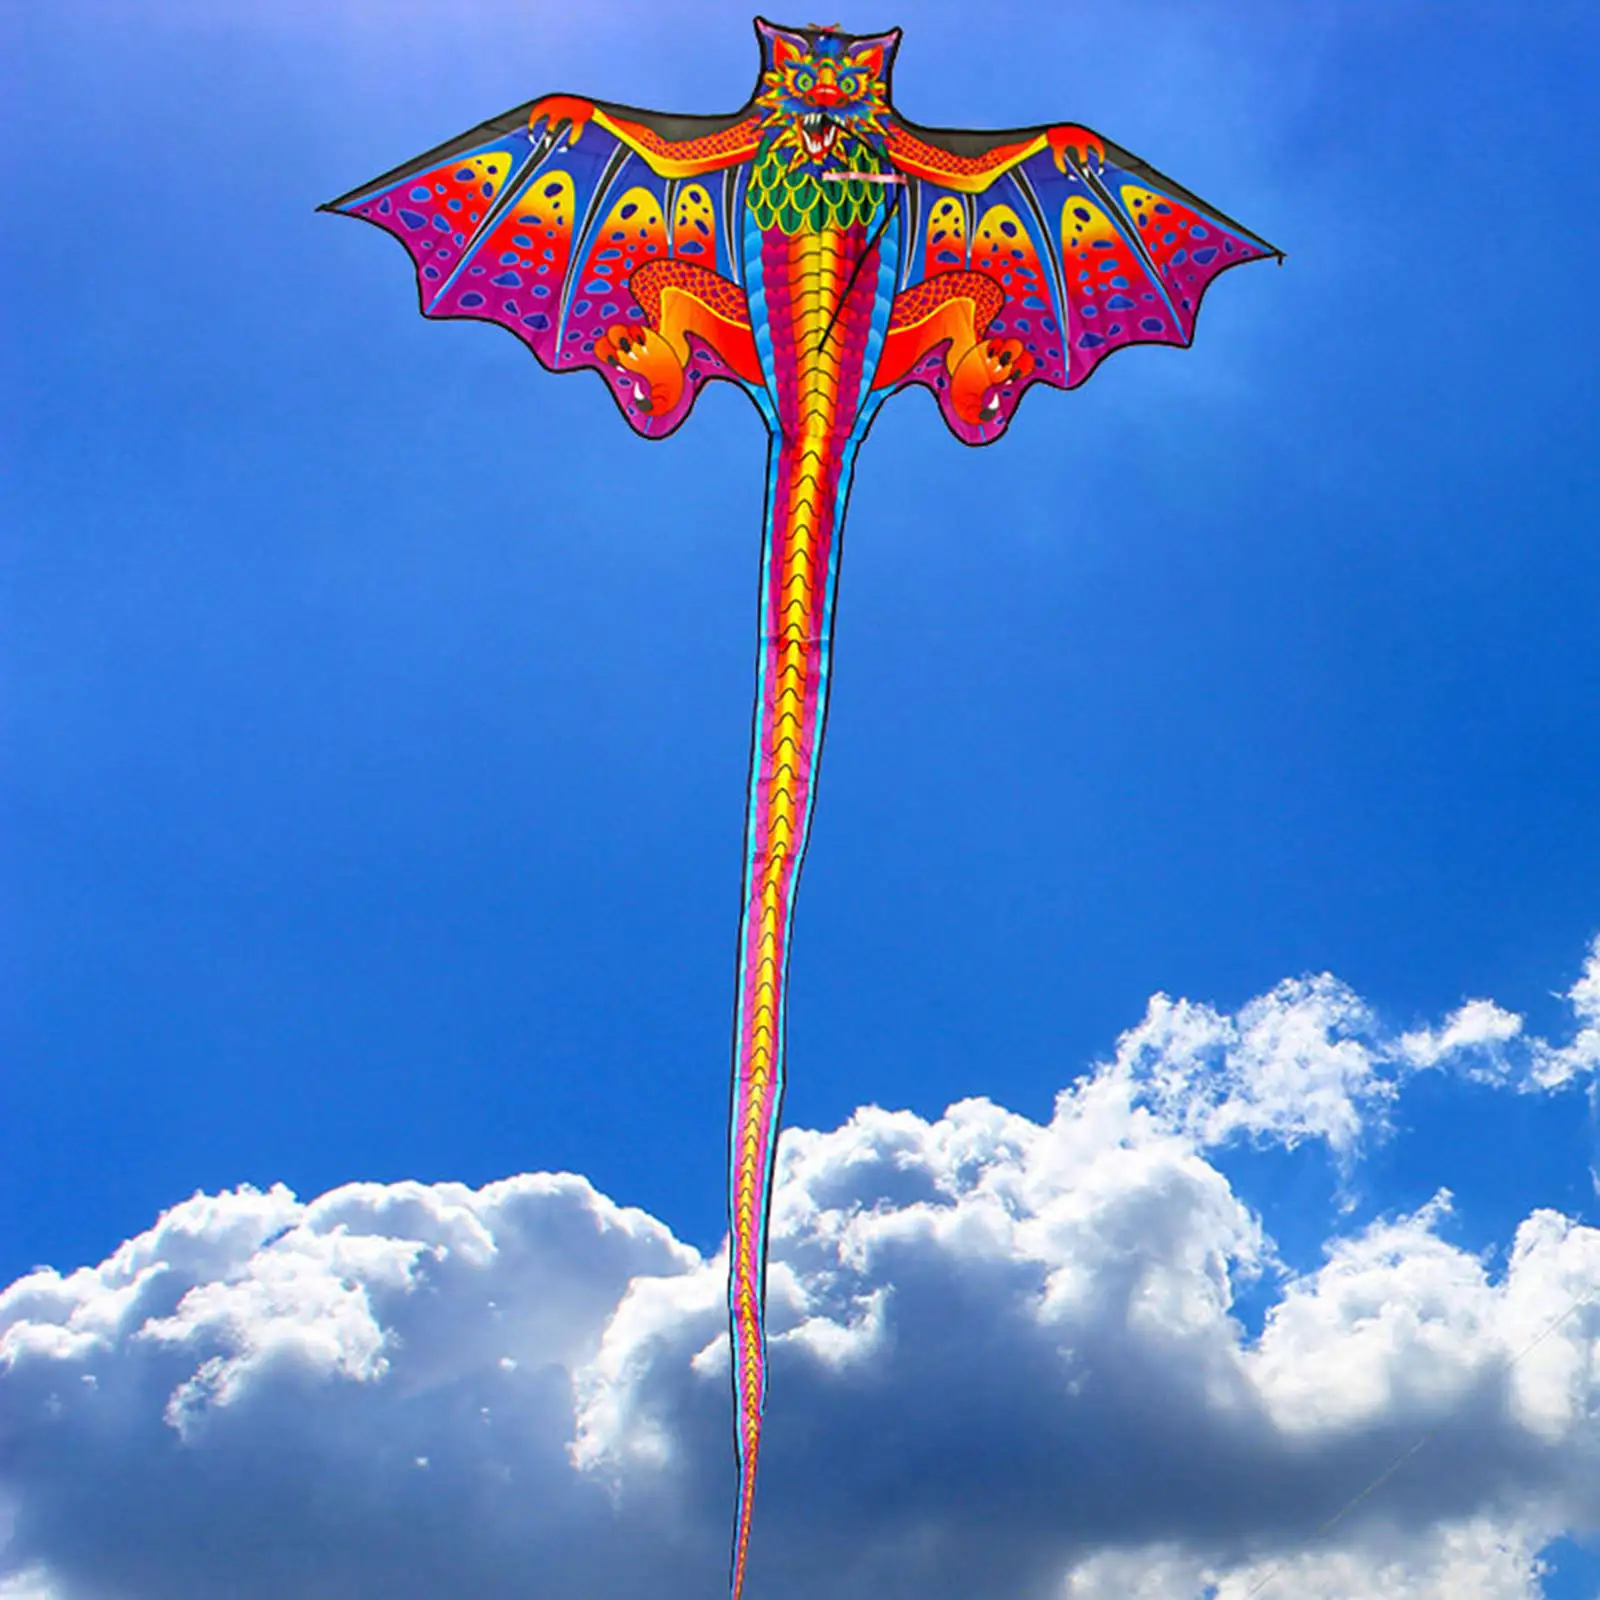 3D Dragon Kite For Kids Outdoor Fun Sports Beach Toys Nylon Kite Toys Fly Children Kite Line Kids Gift Family Outdoor Sports